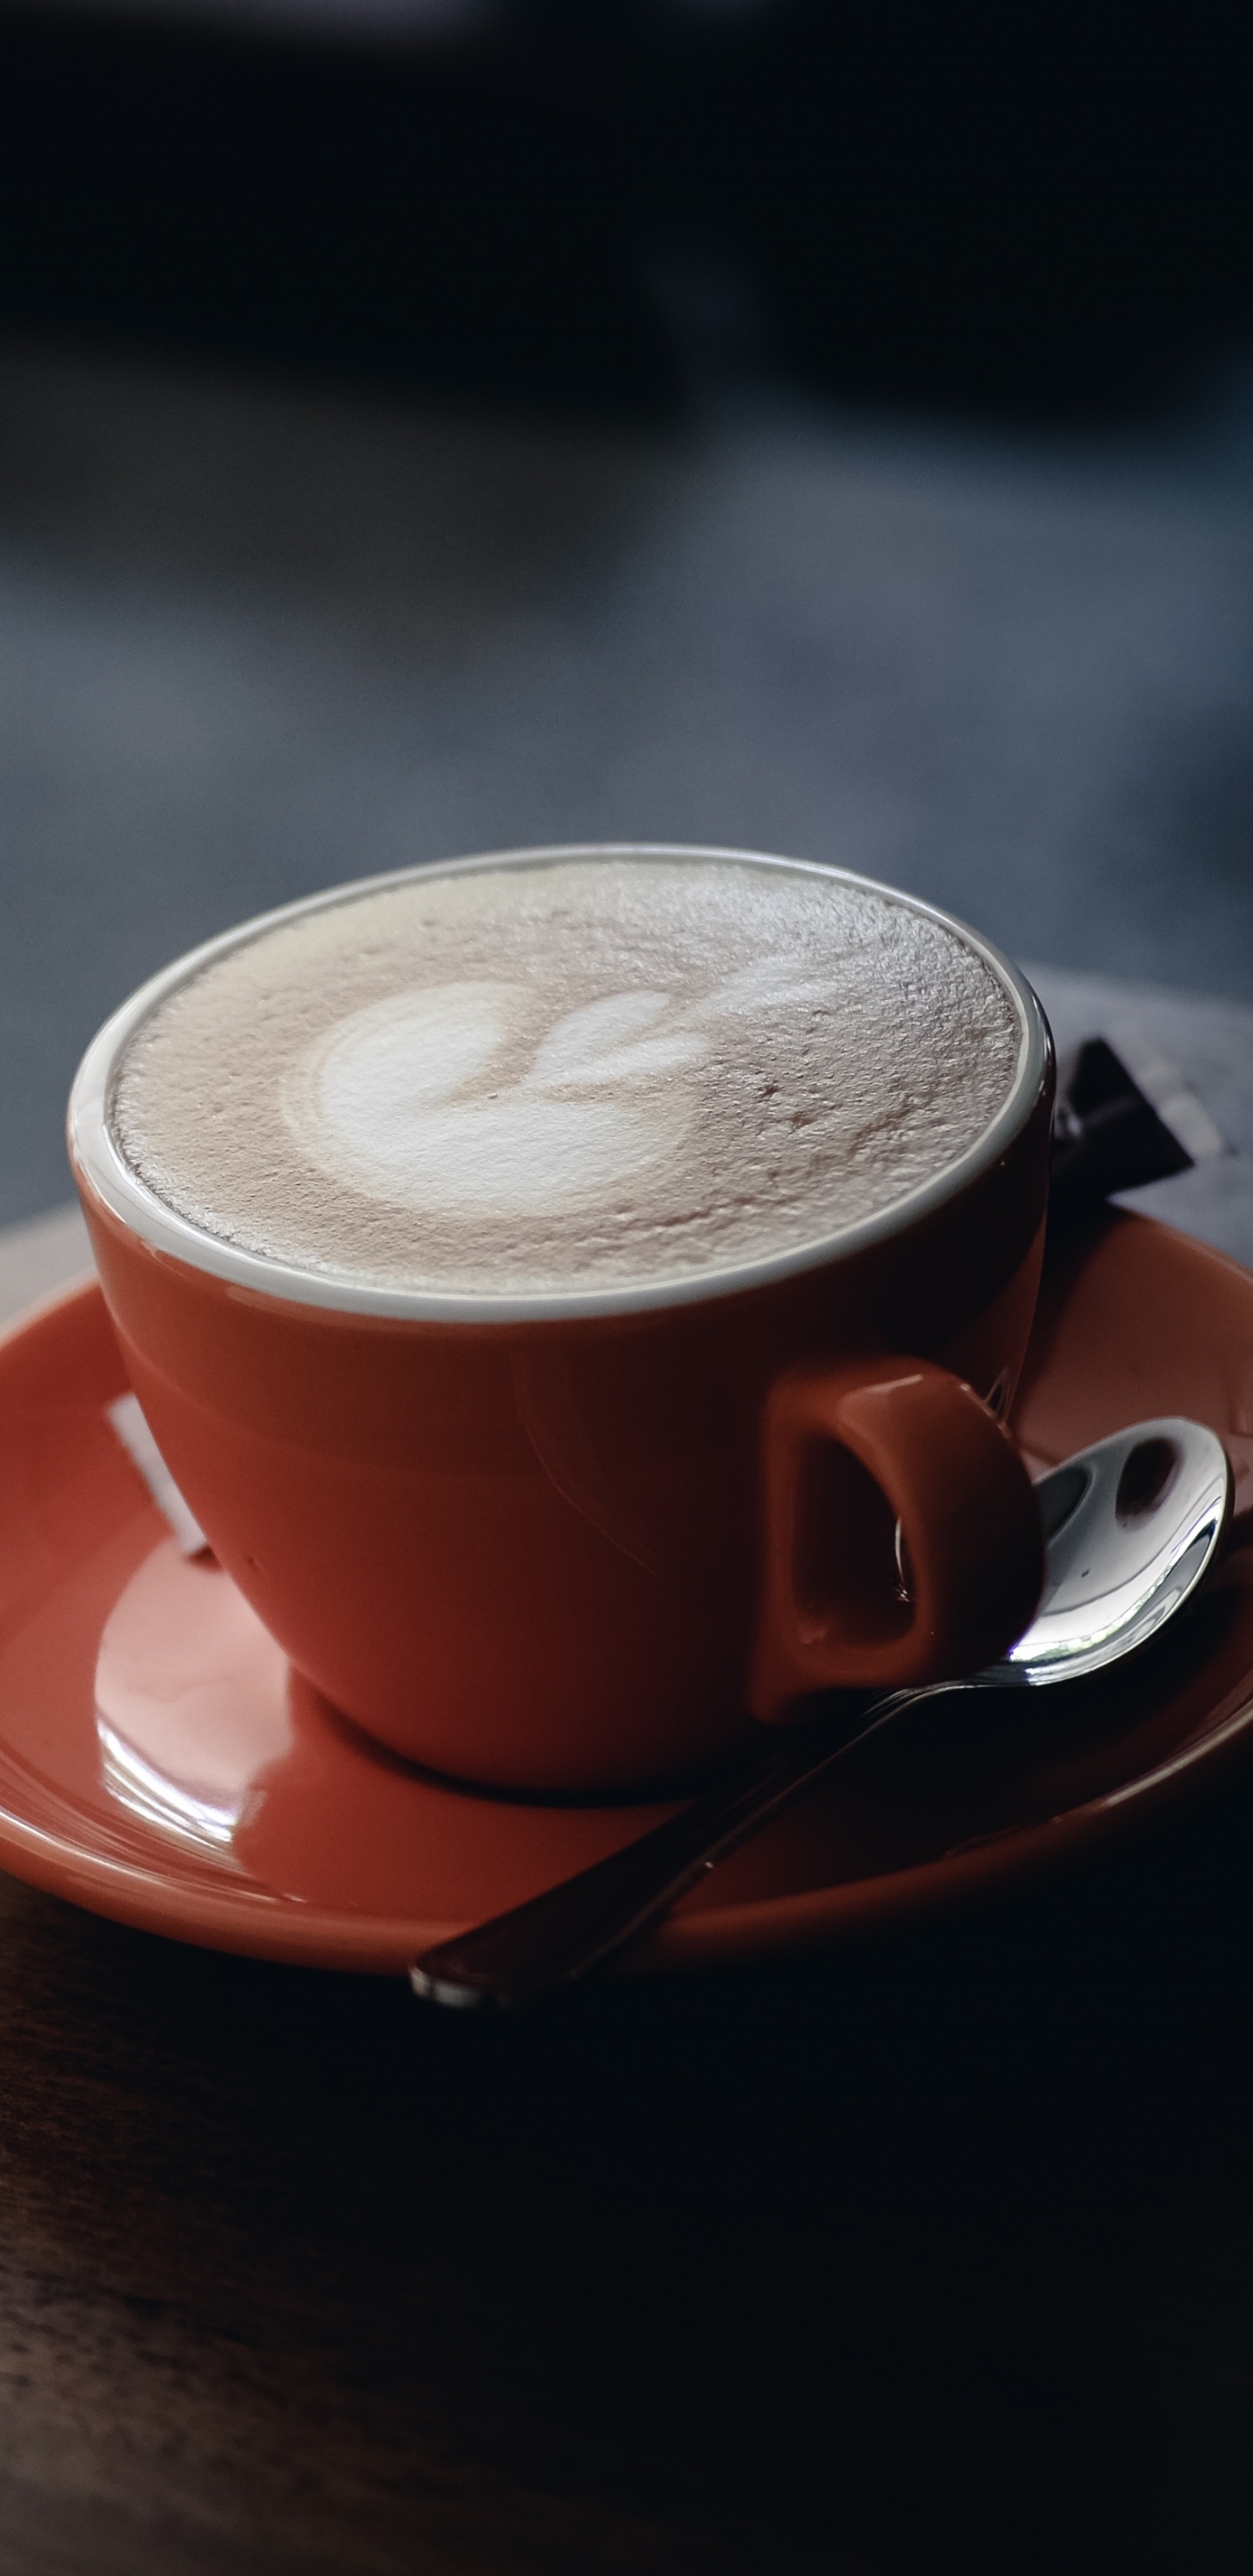 卡布奇诺咖啡, 拿铁艺术, 咖啡杯, 拿铁咖啡, Caff玛奇雅朵咖啡 壁纸 1440x2960 允许